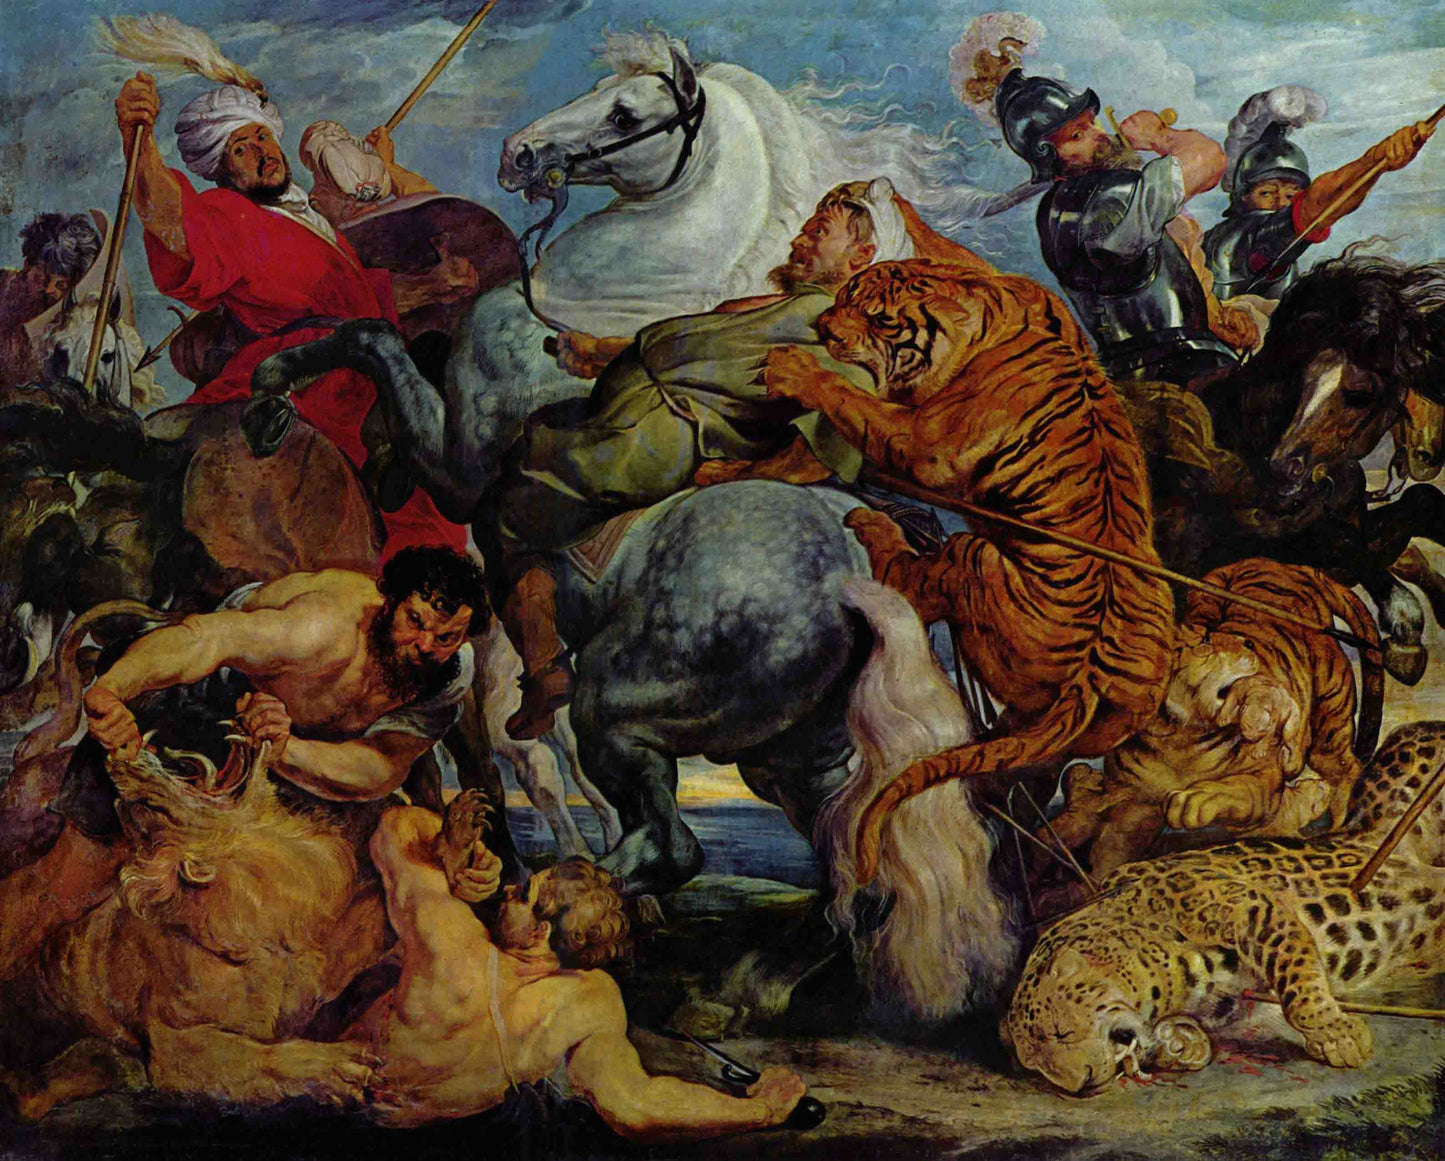 Tiger and Lion Hunt